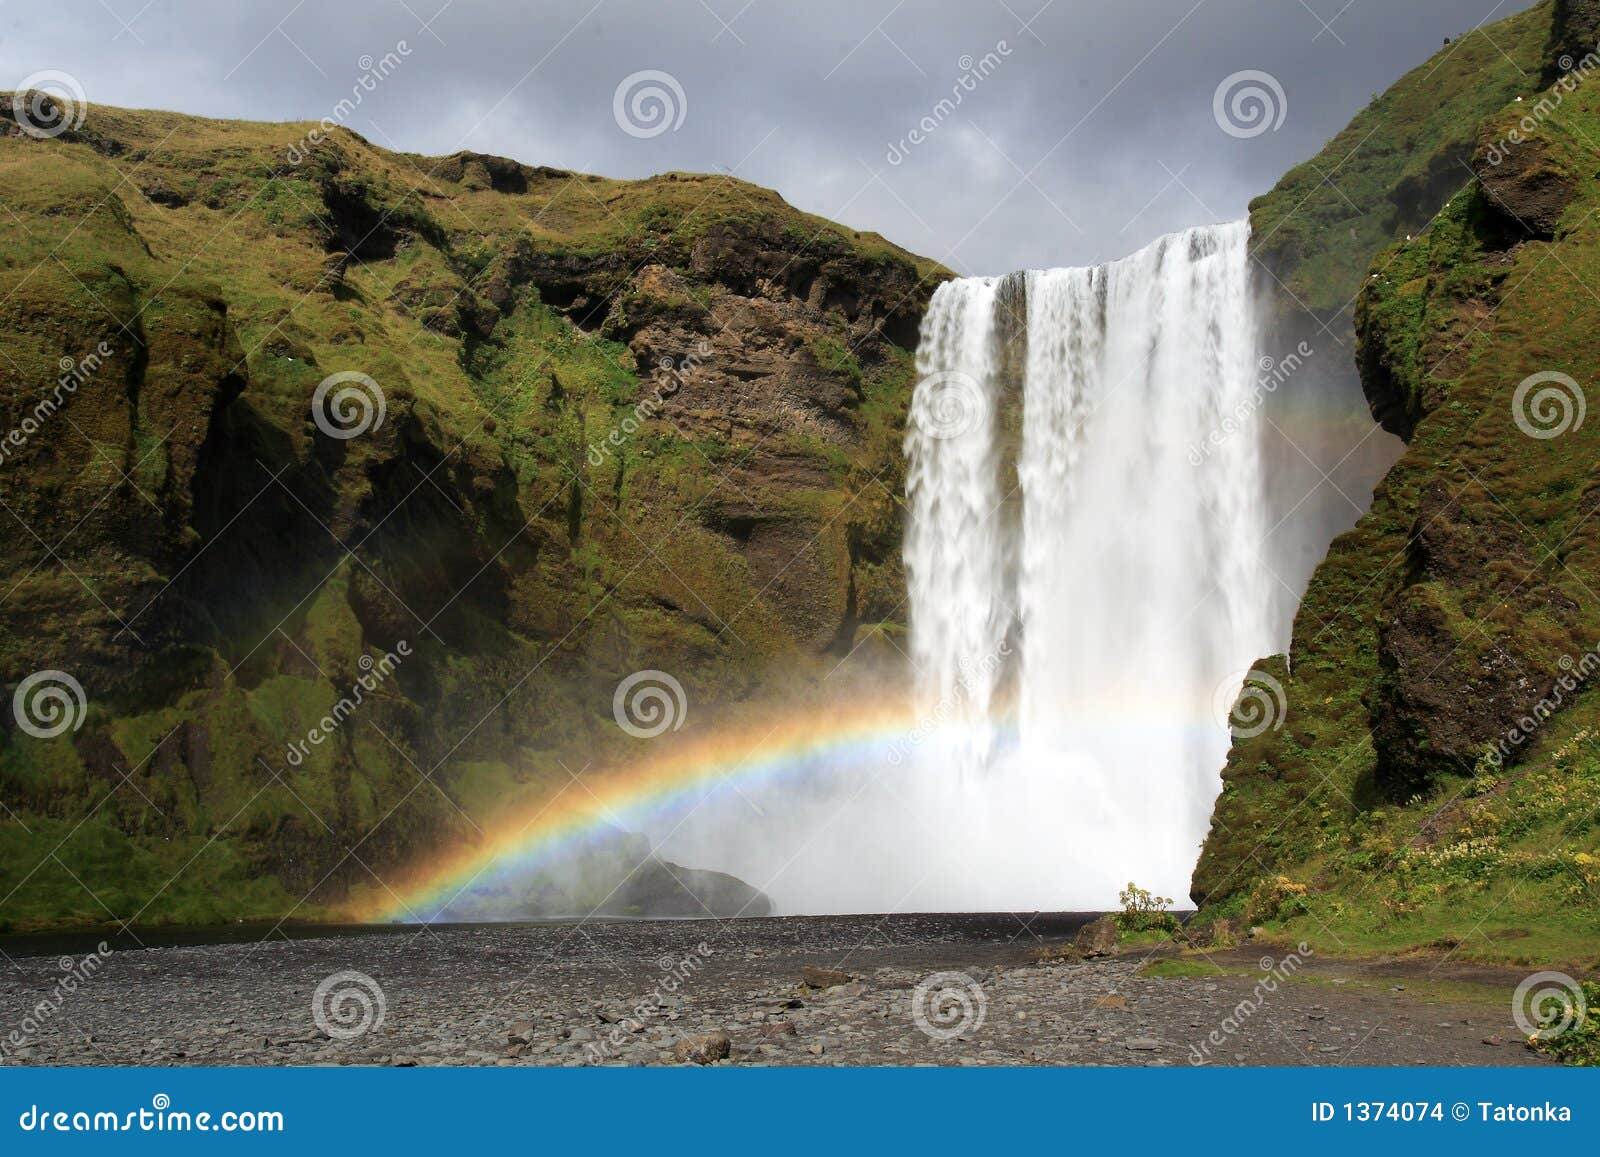 skogafoss rainbow waterfall